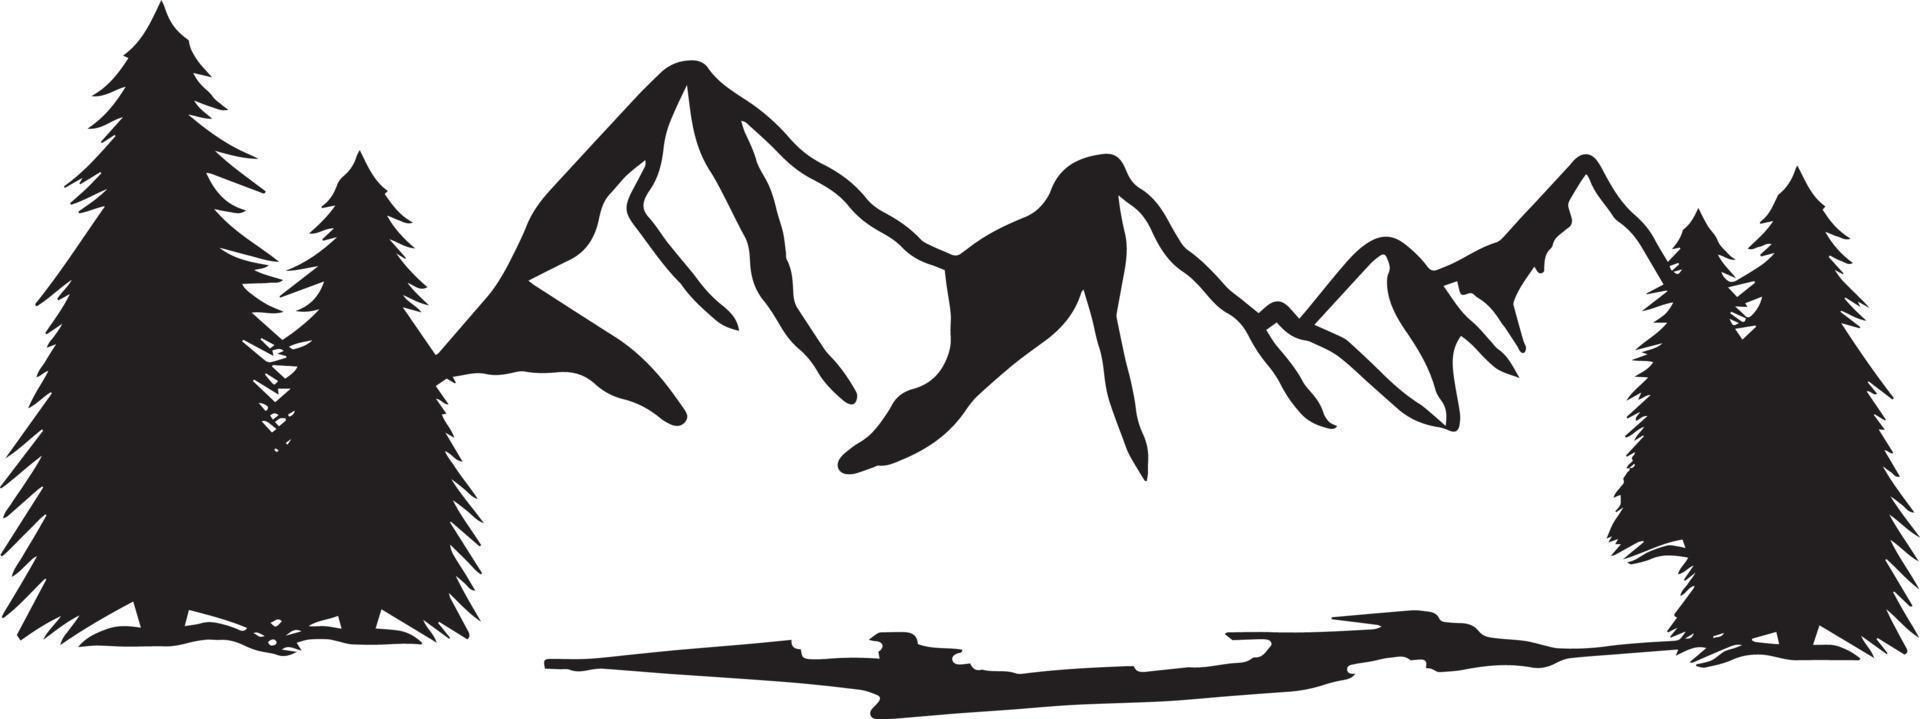 silhouette di un paesaggio di montagna con alberi di pino, illustrazione vettoriale in bianco e nero